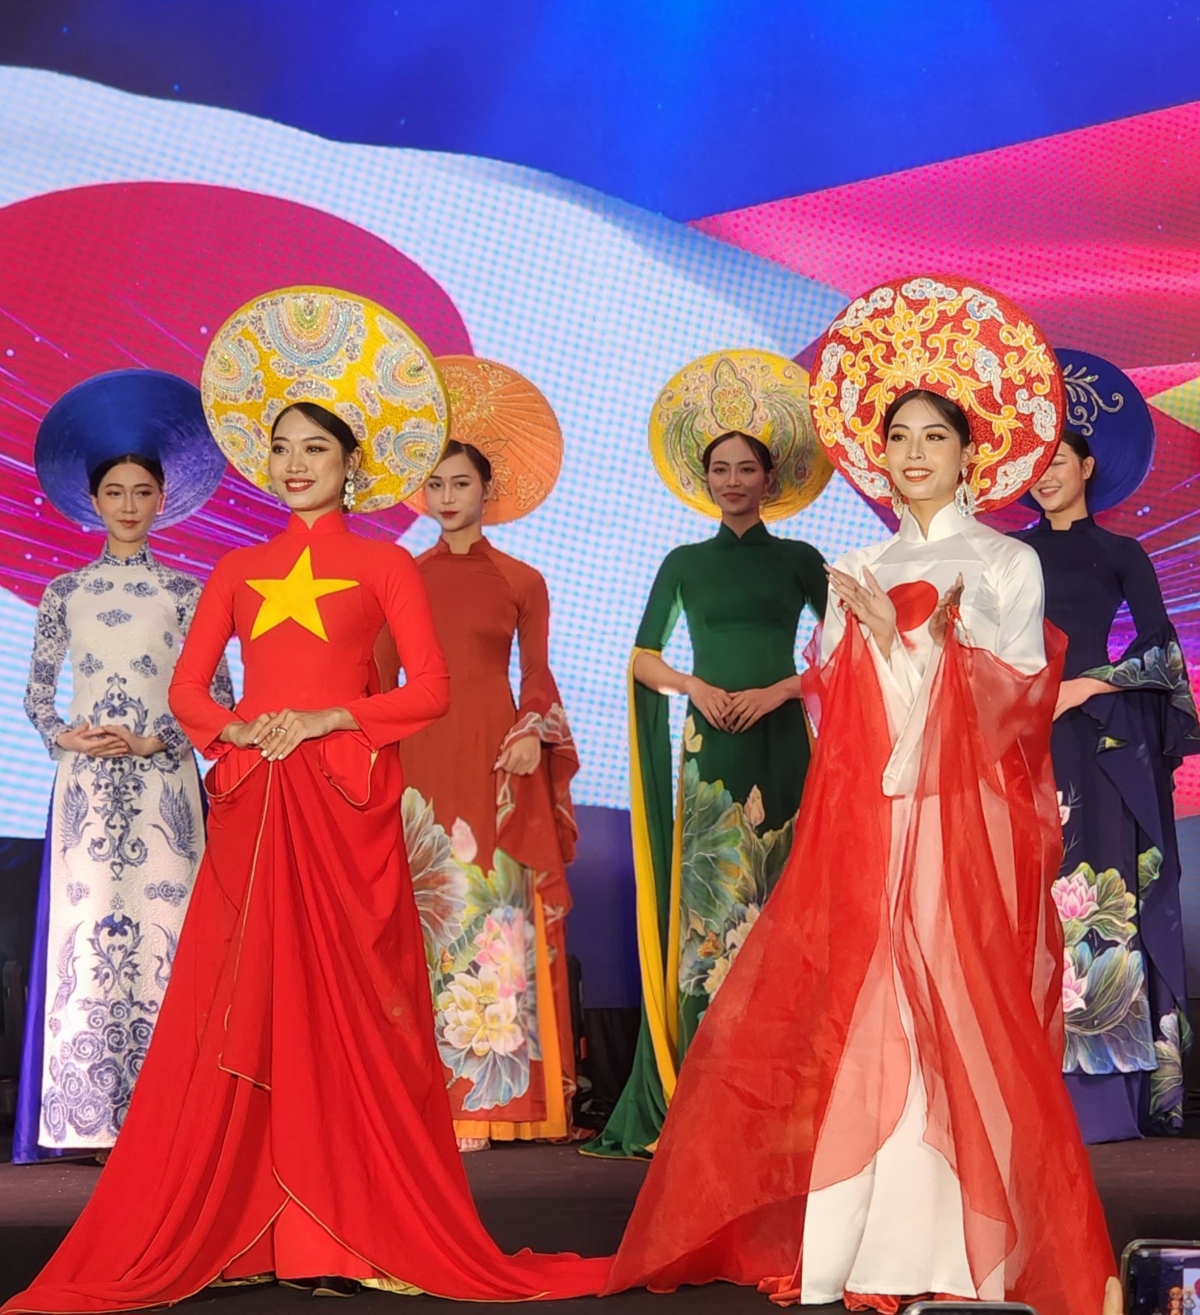 kimono-ao dai fashion show highlights vietnam-japan friendship picture 1